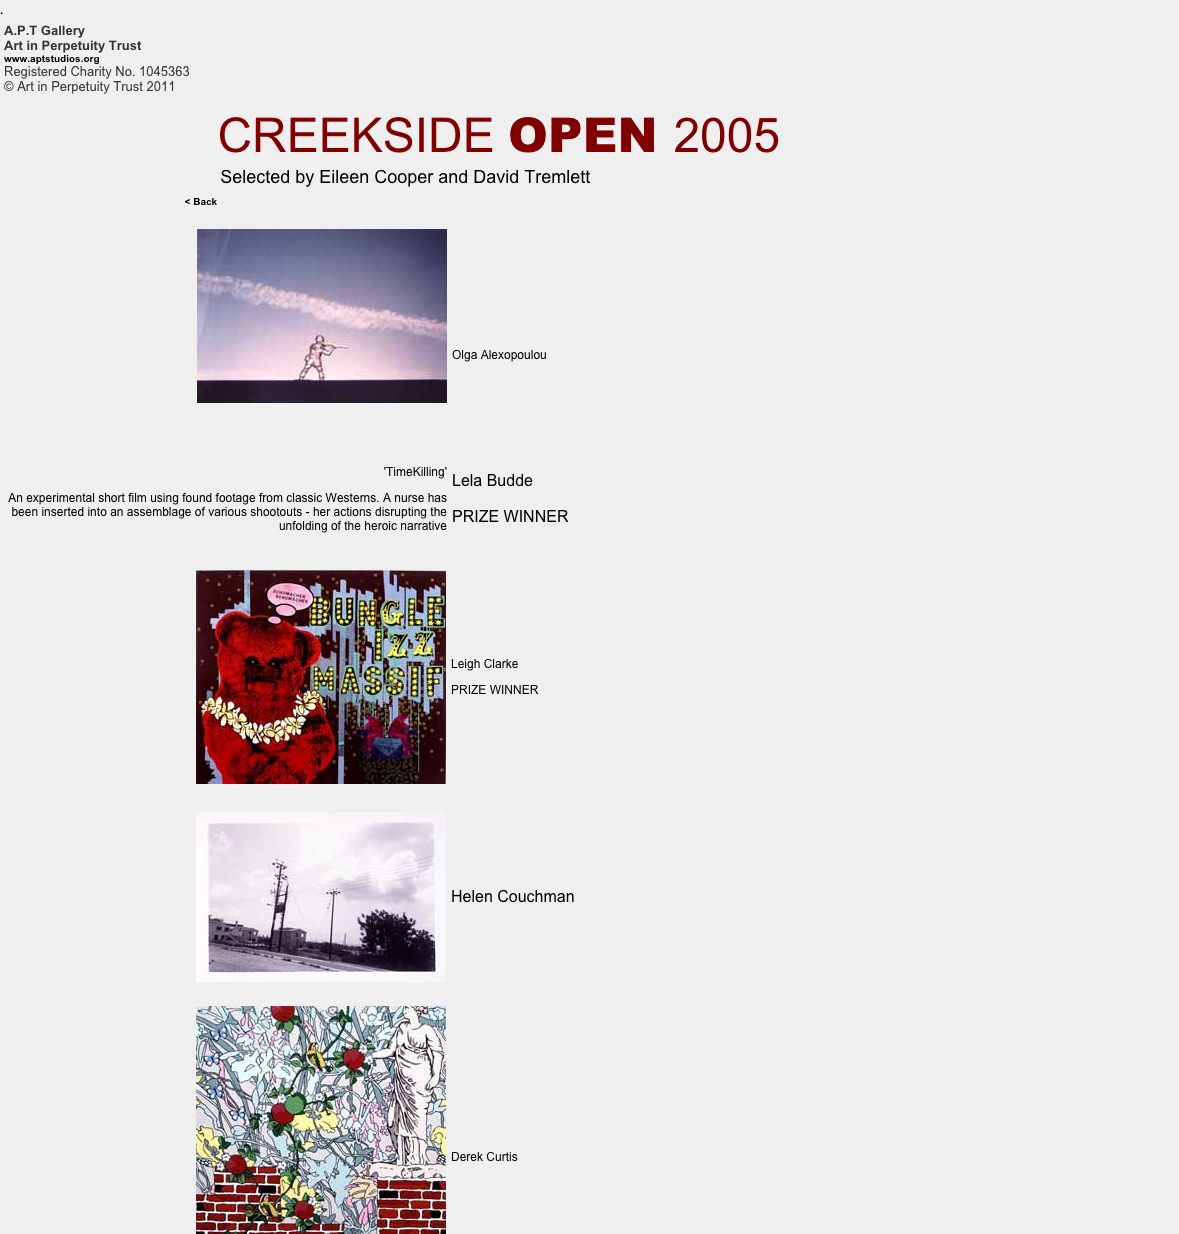 Creekside Open 2005